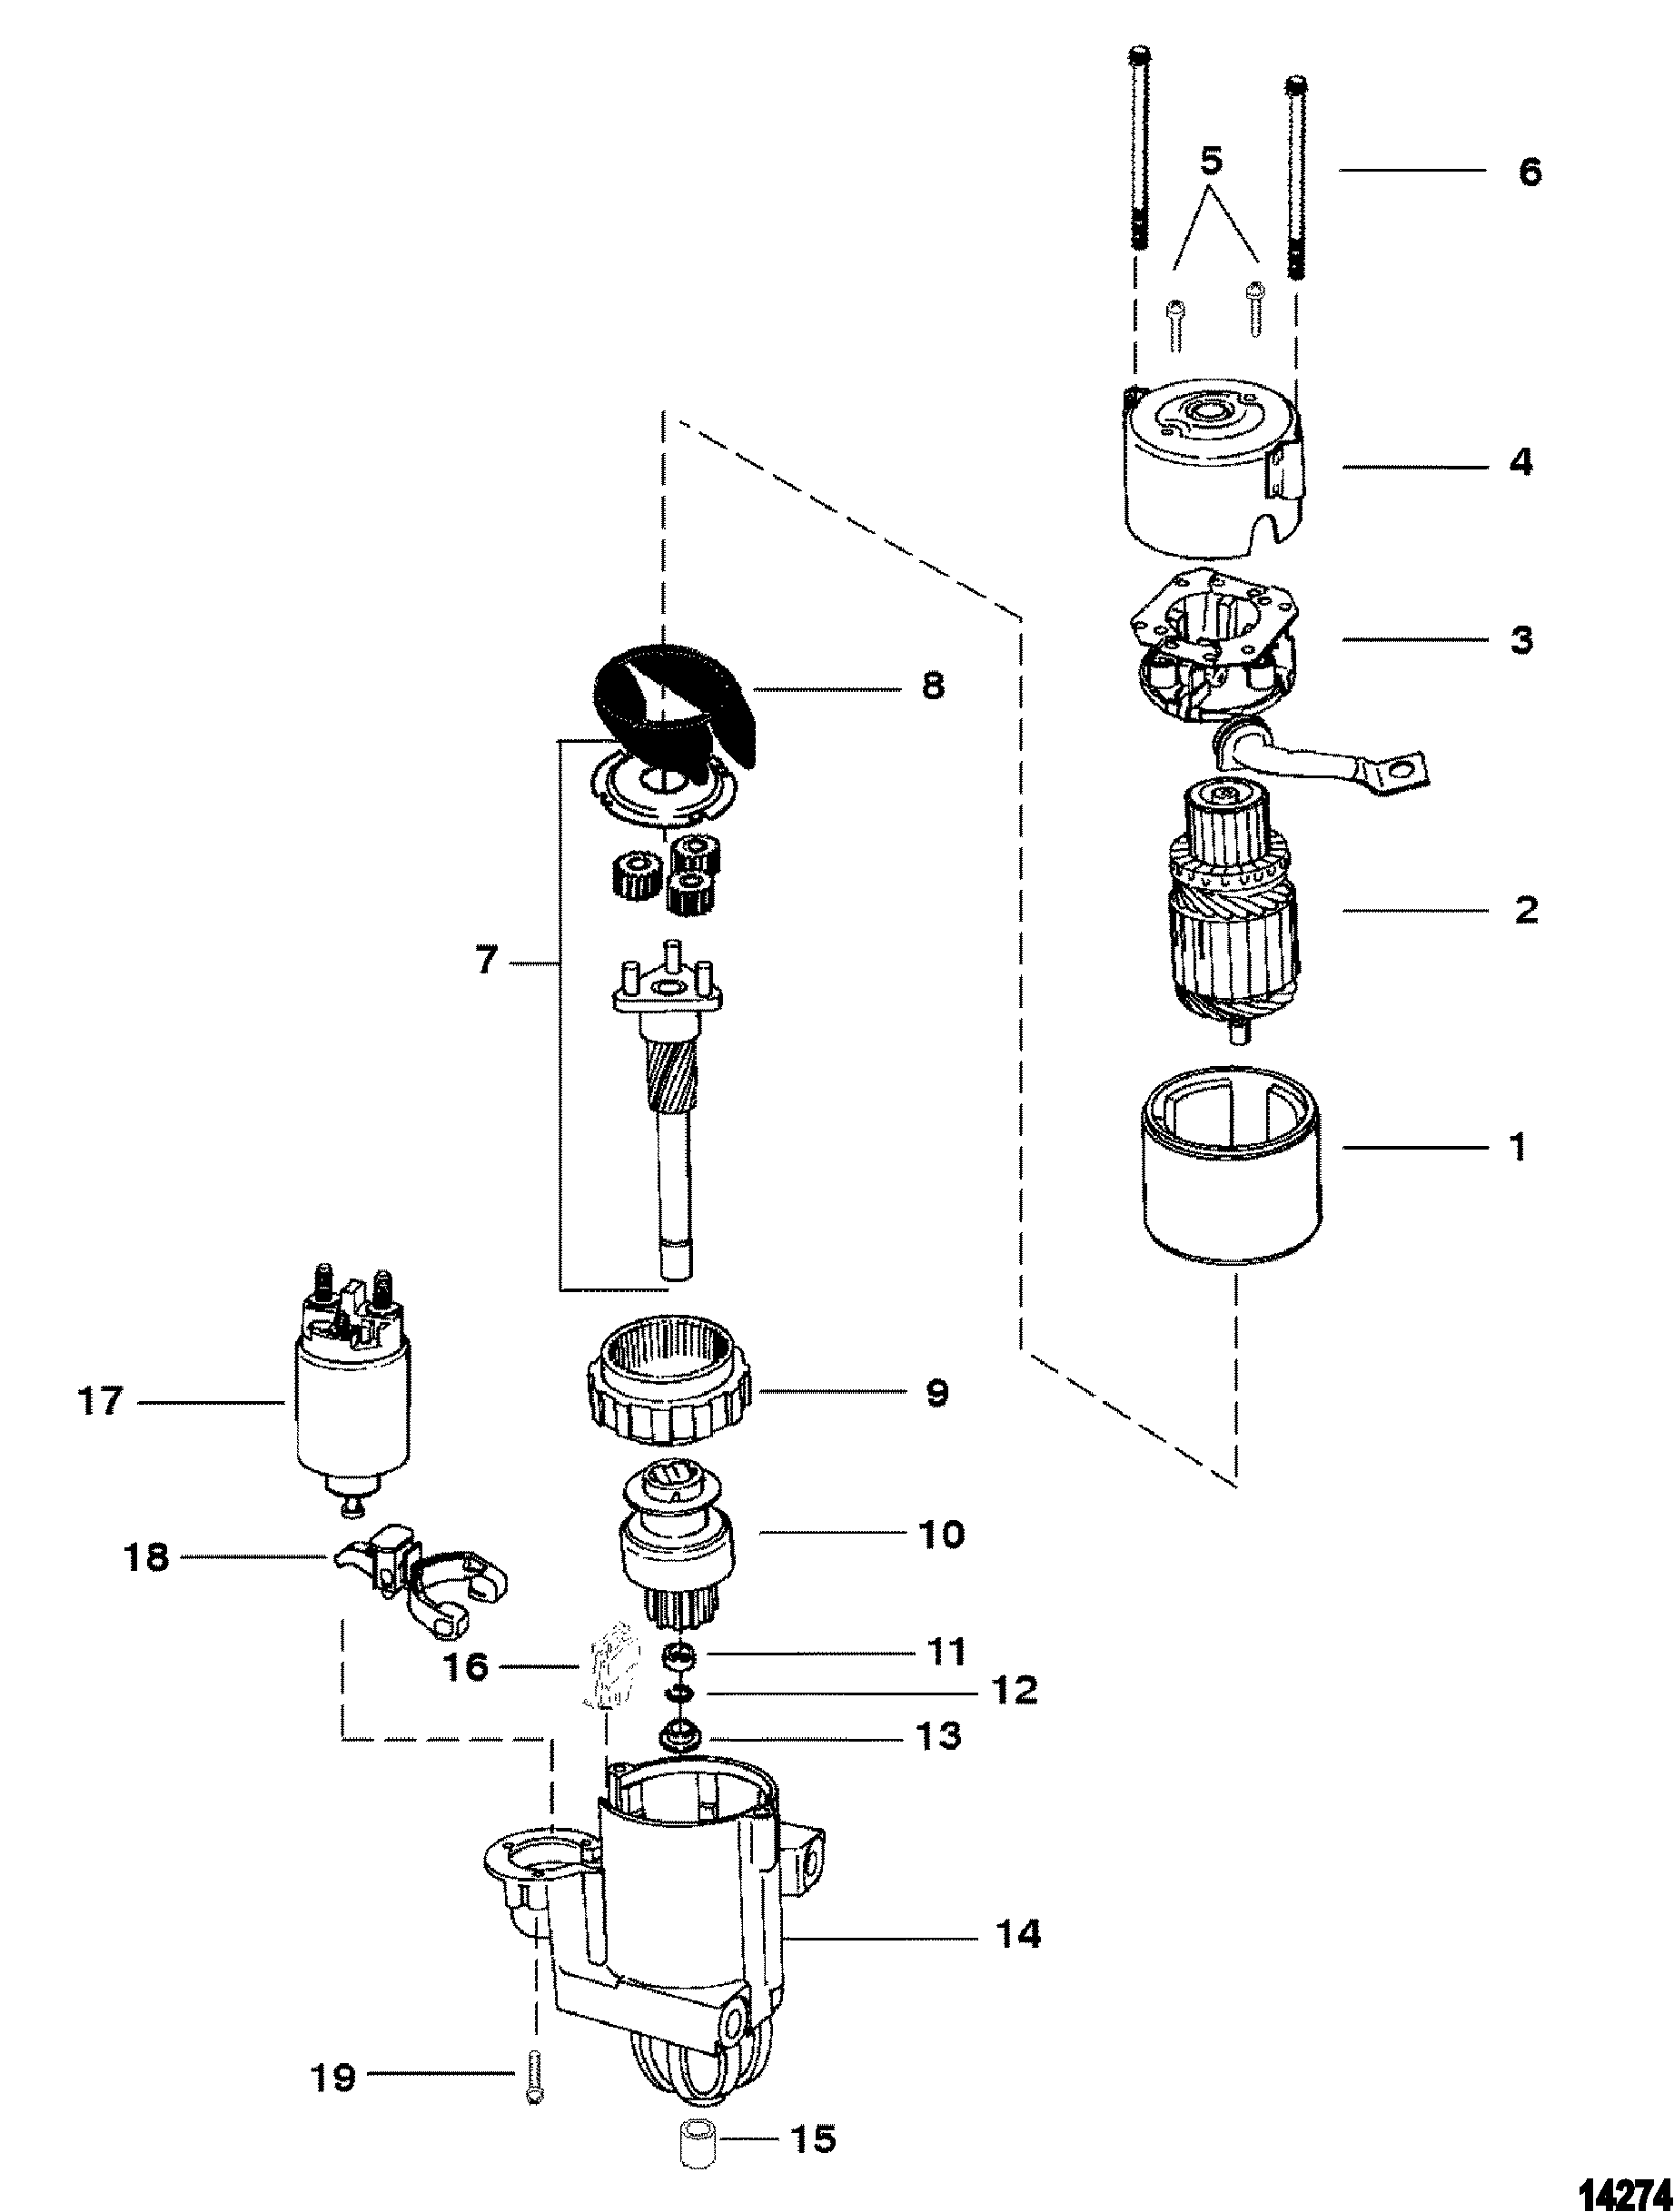 STARTER MOTOR(PG260  -  2-7/8 DIAMETER END CAP)